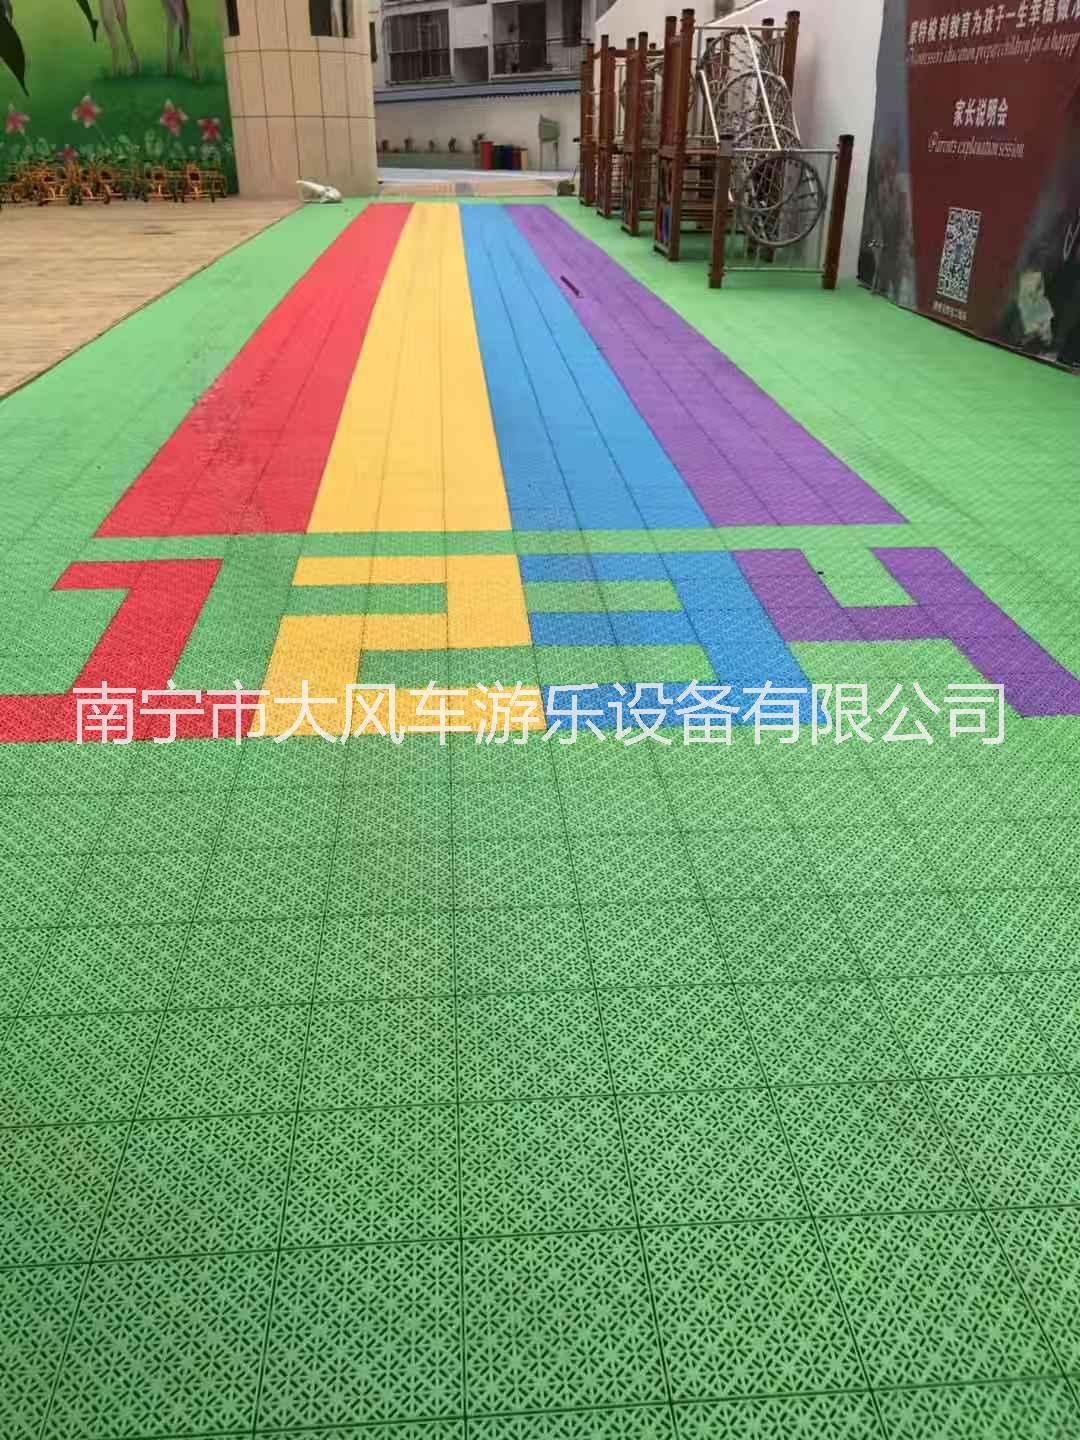 南宁市广西南宁悬浮地板厂家 南宁幼儿园厂家